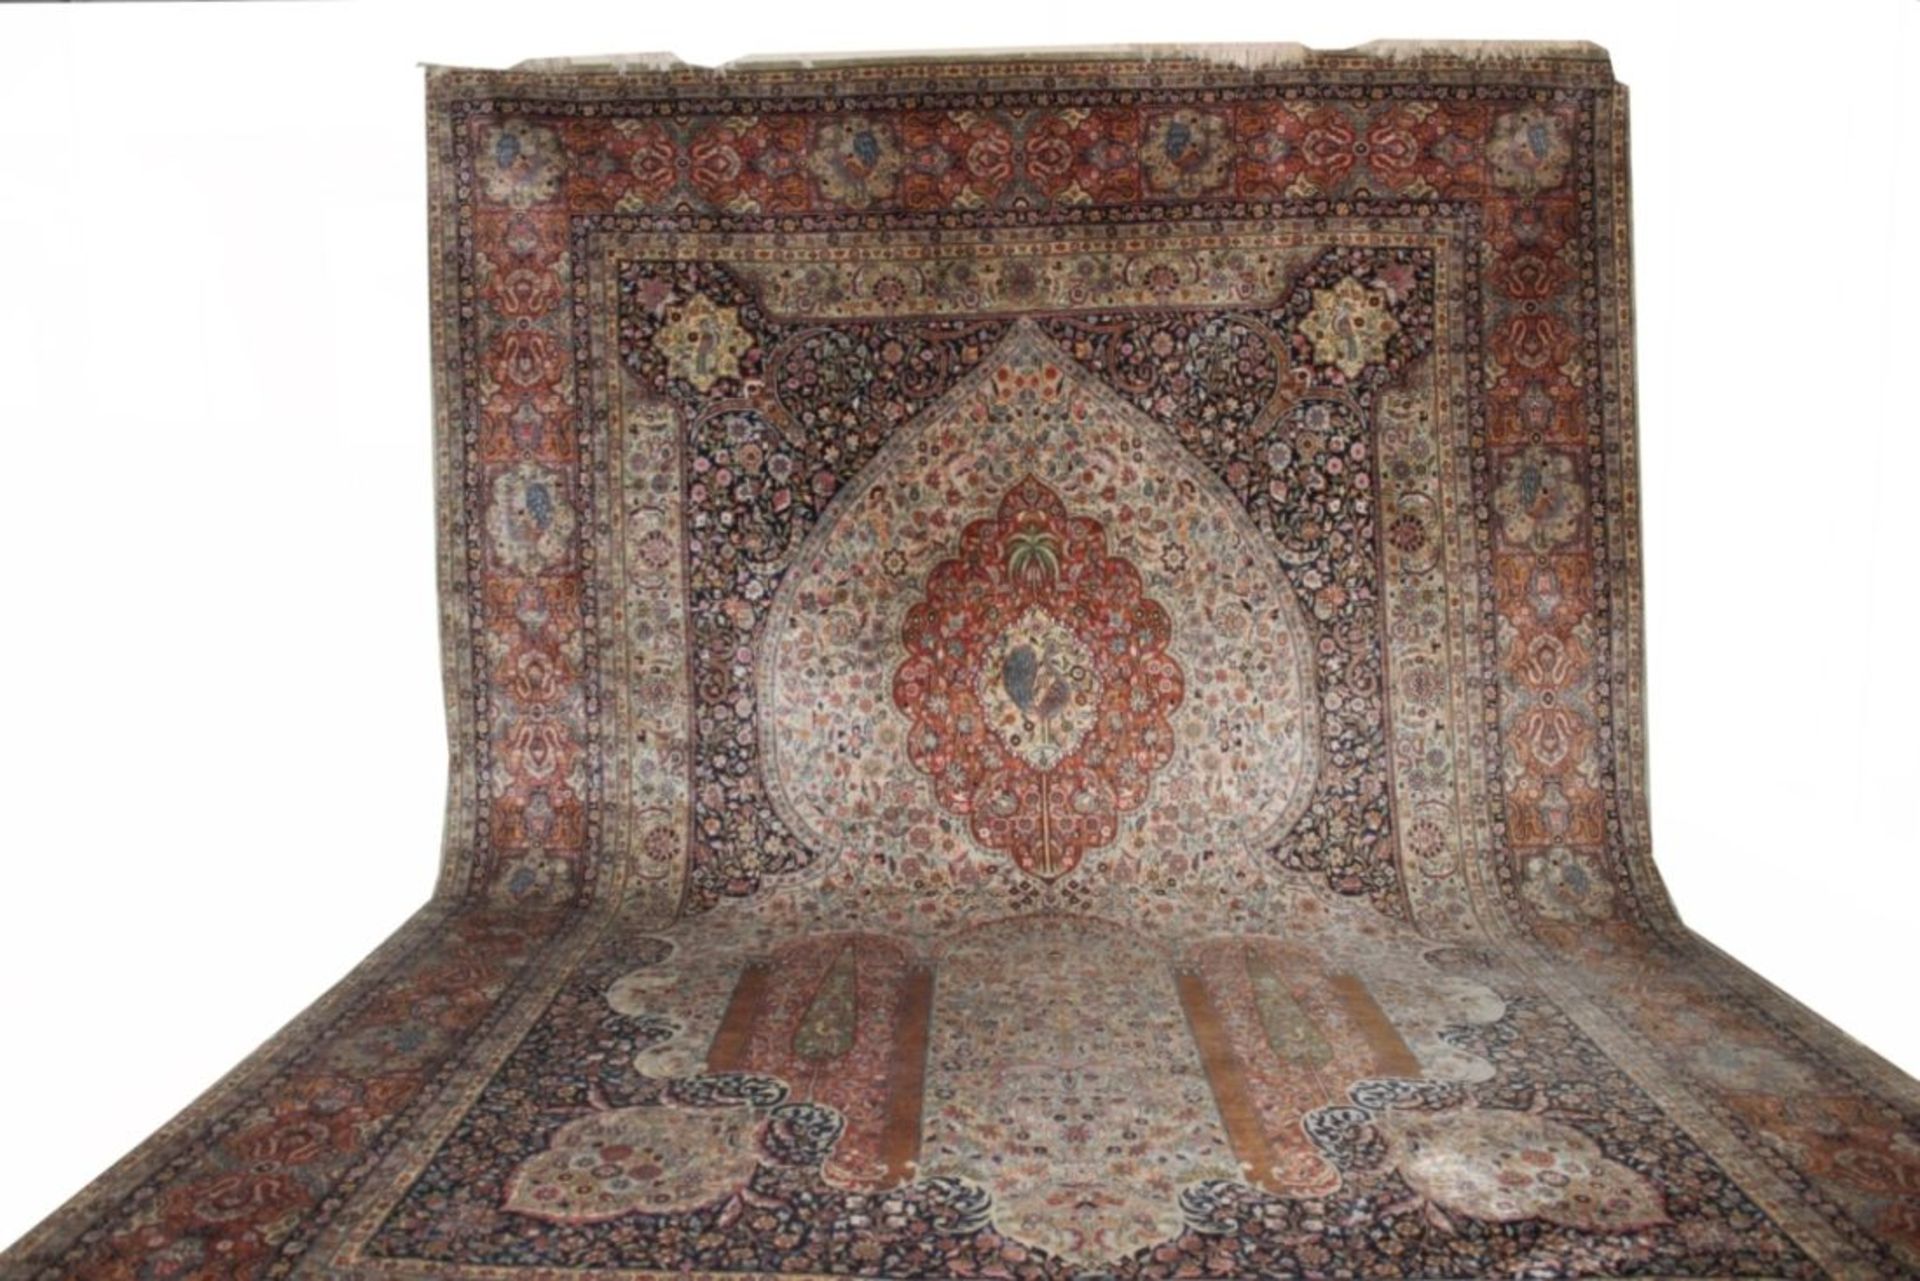 Großer Teppich - Kermann Pakistan zentrale Darstellung einer Mihrab, reiches florales Dekor, Maße